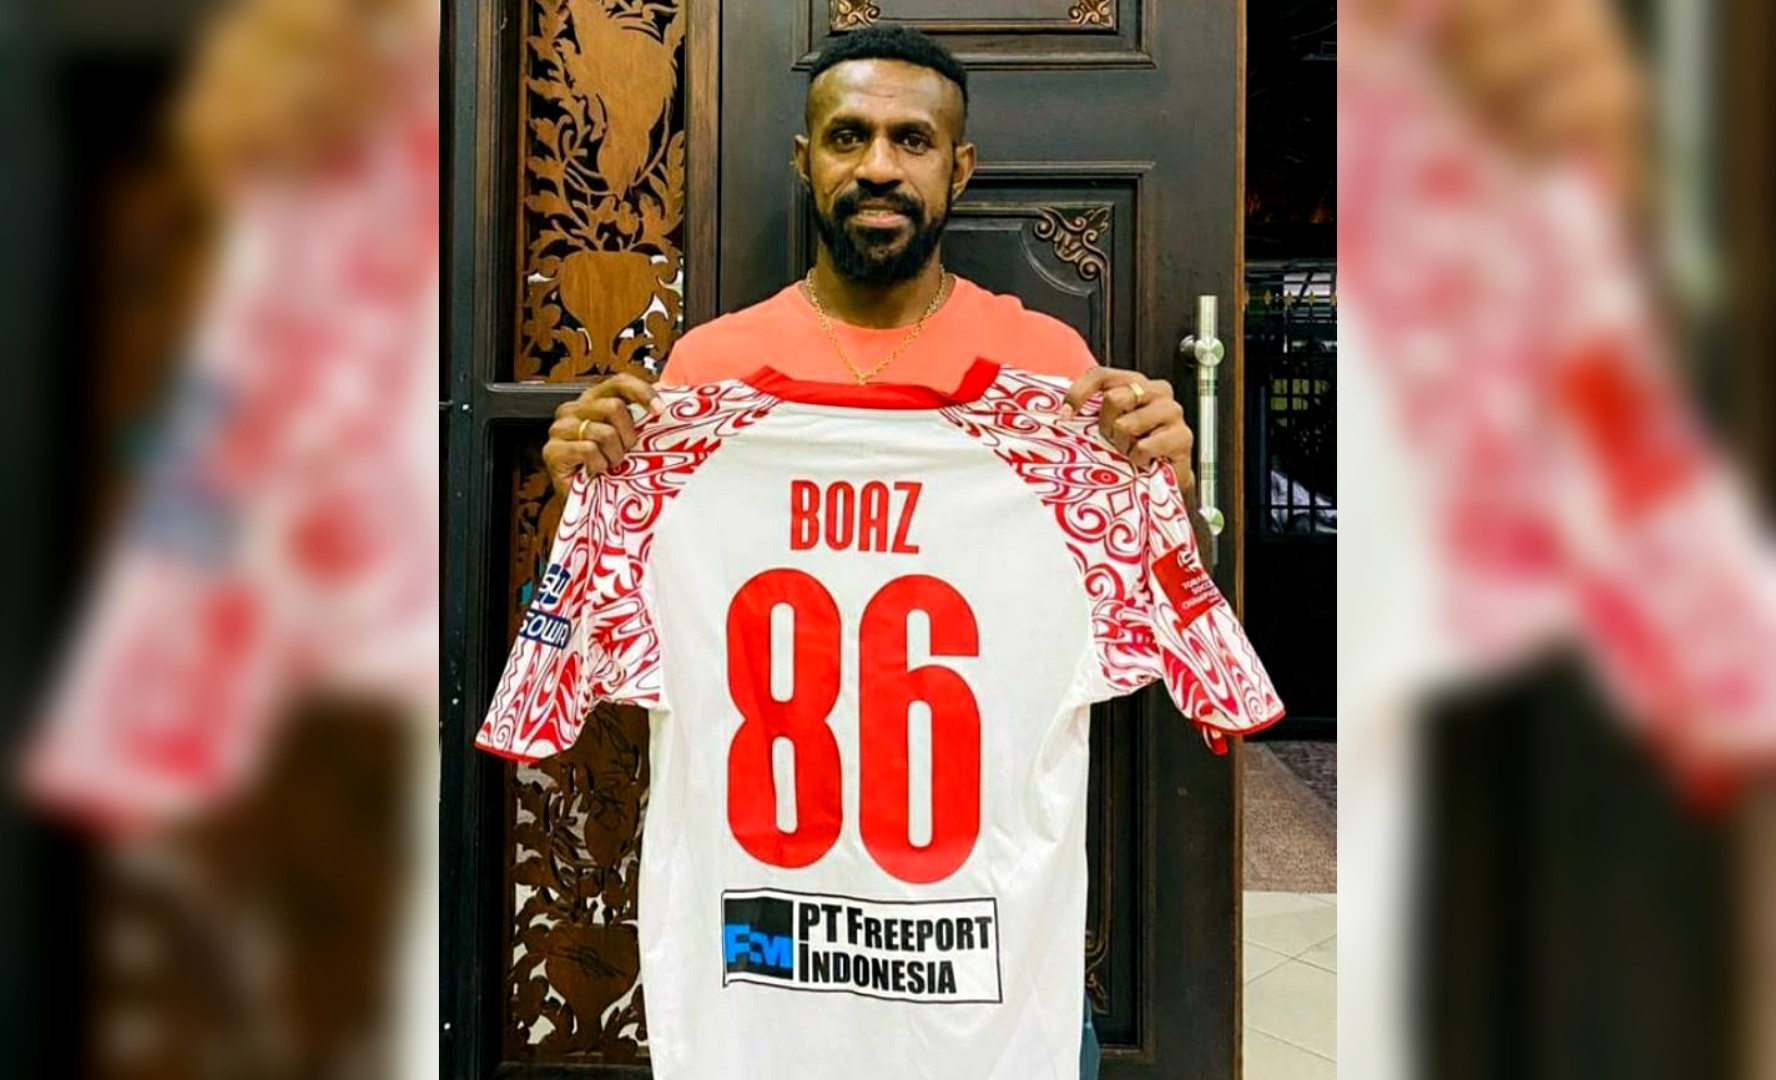 LELANG JERSEY | Kapten Persipura Jayapura, Boaz Salossa menunjukan jersey yang dilelang. (Foto: Instagram Boaz Salossa)